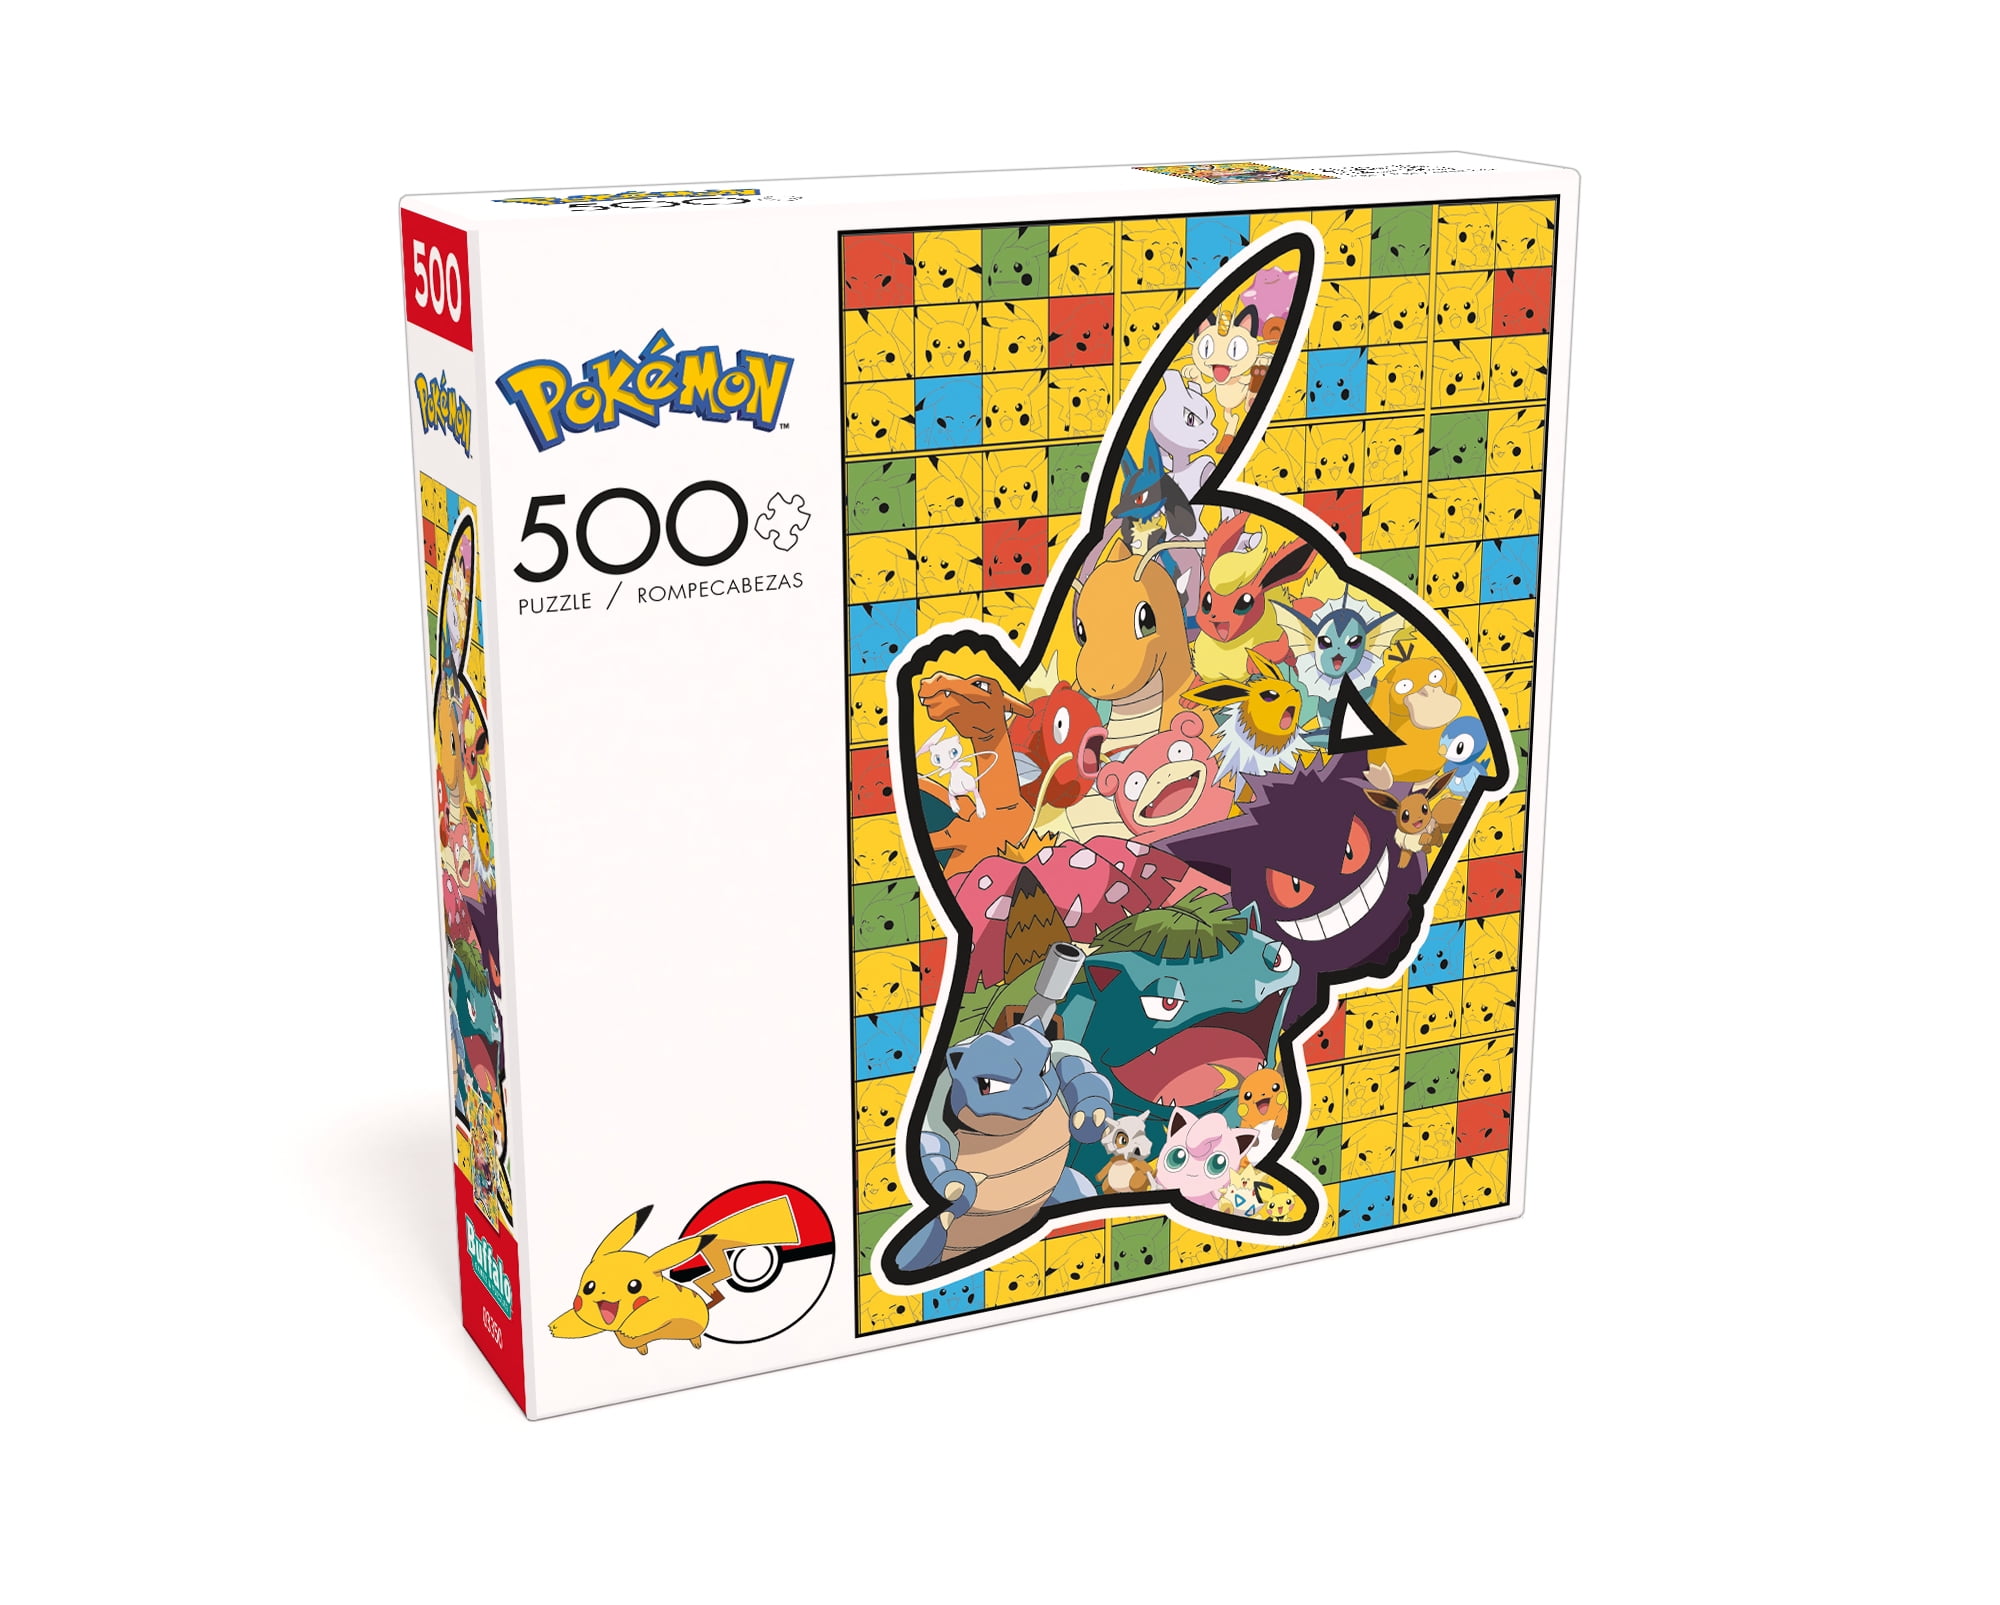 Pokémon Pikachu Vs. Mewtwo 100 Piece Jigsaw Puzzle